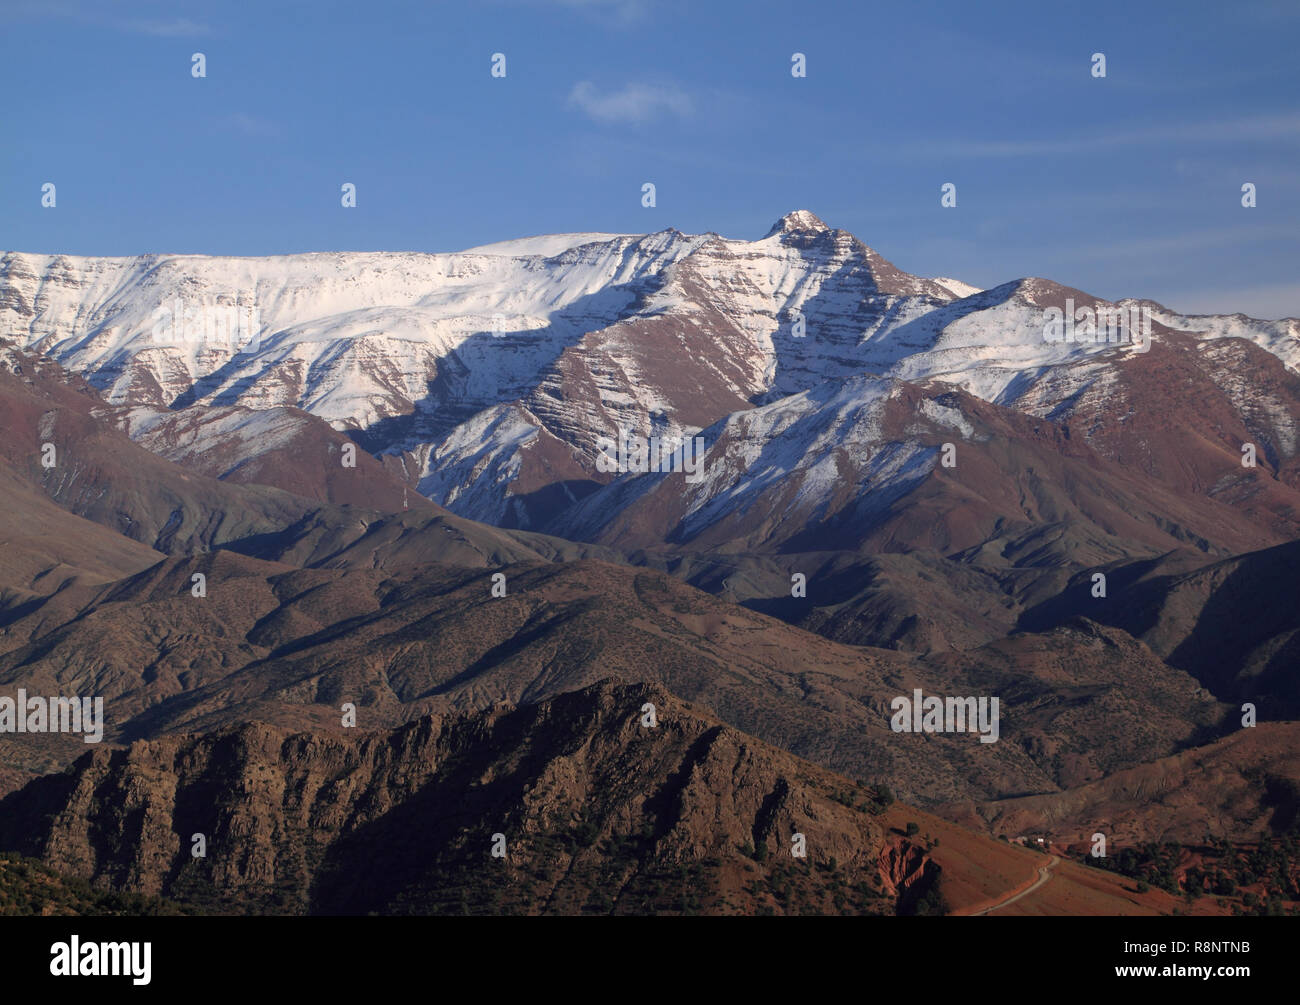 Morocco The snow-capped High Atlas Mountain range between Marrakesh, Ait Ben Haddou and Ouarzazate. Stock Photo